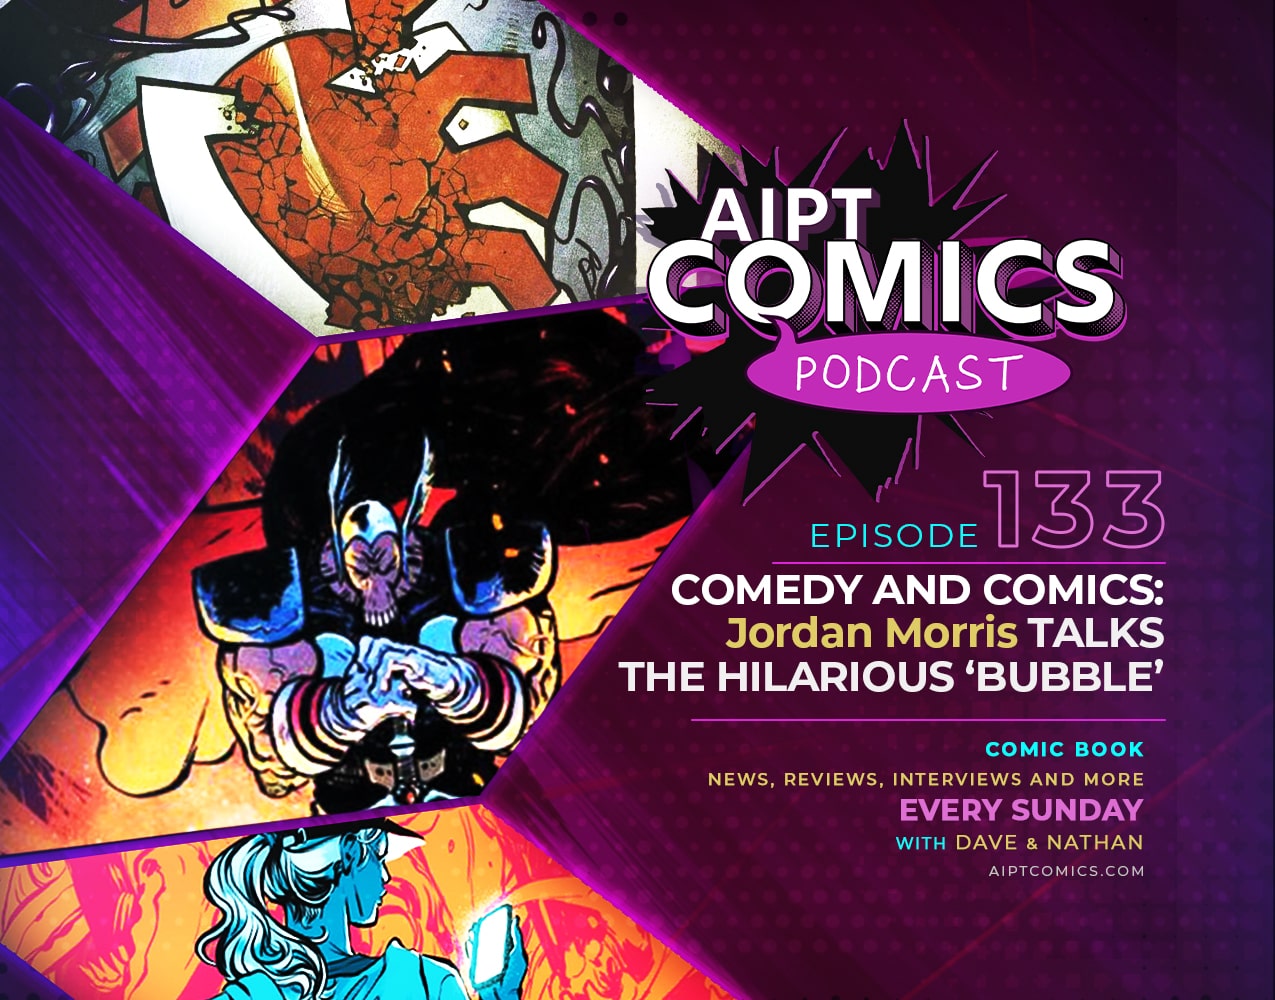 AIPT Comics podcast episode 133: Comedy and comics: Jordan Morris talks the hilarious ‘Bubble’